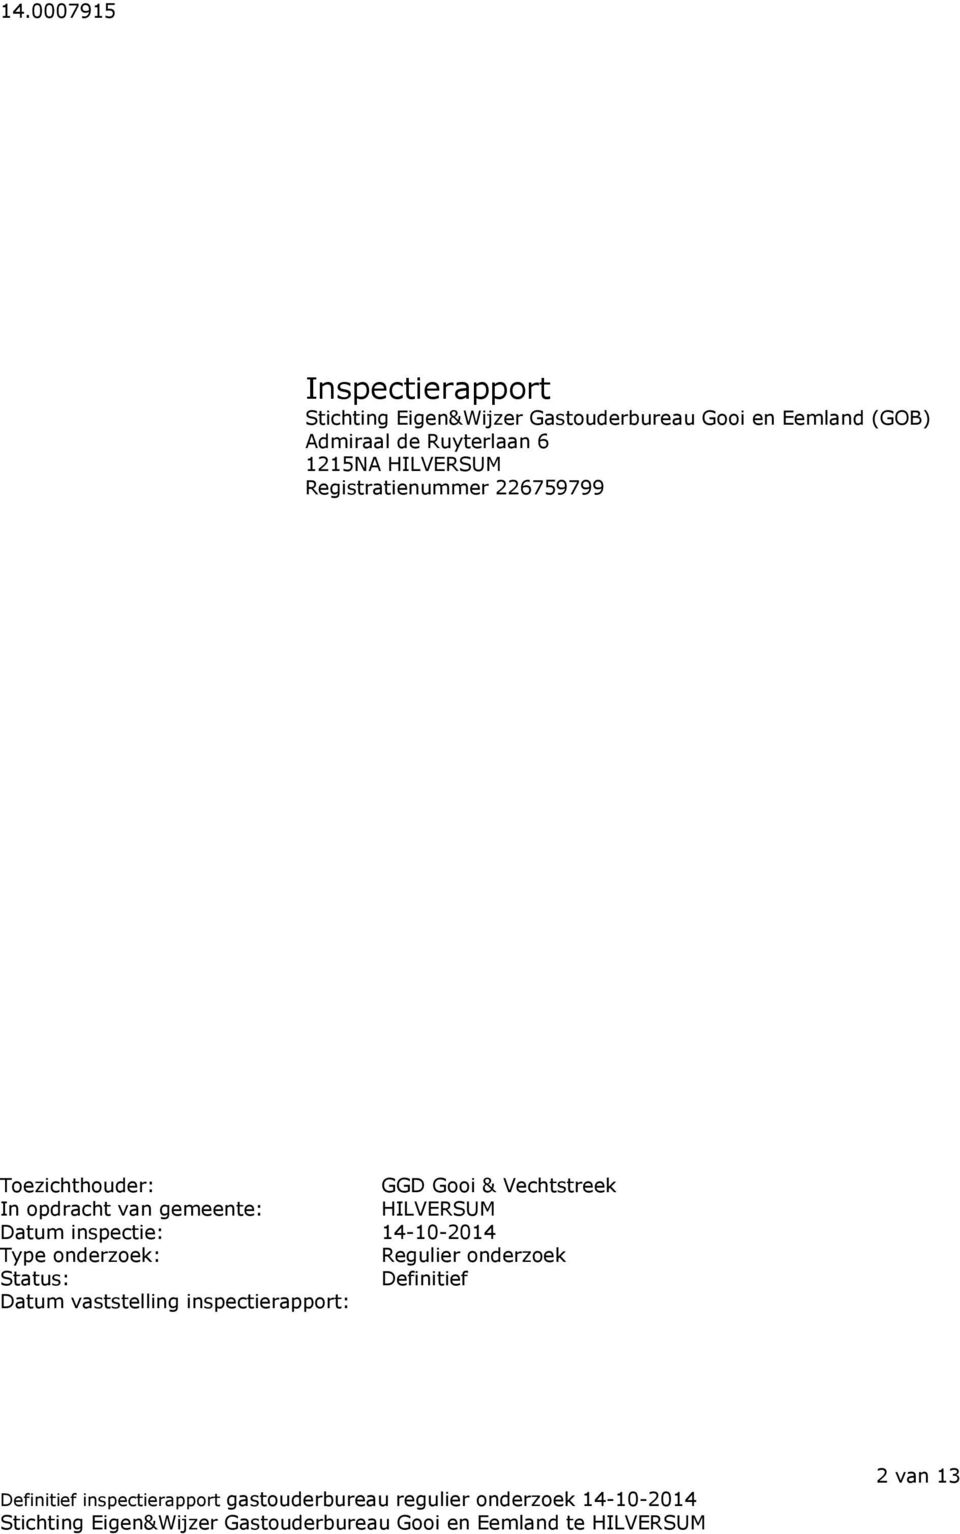 Gooi & Vechtstreek In opdracht van gemeente: HILVERSUM Datum inspectie: 14-10-2014 Type